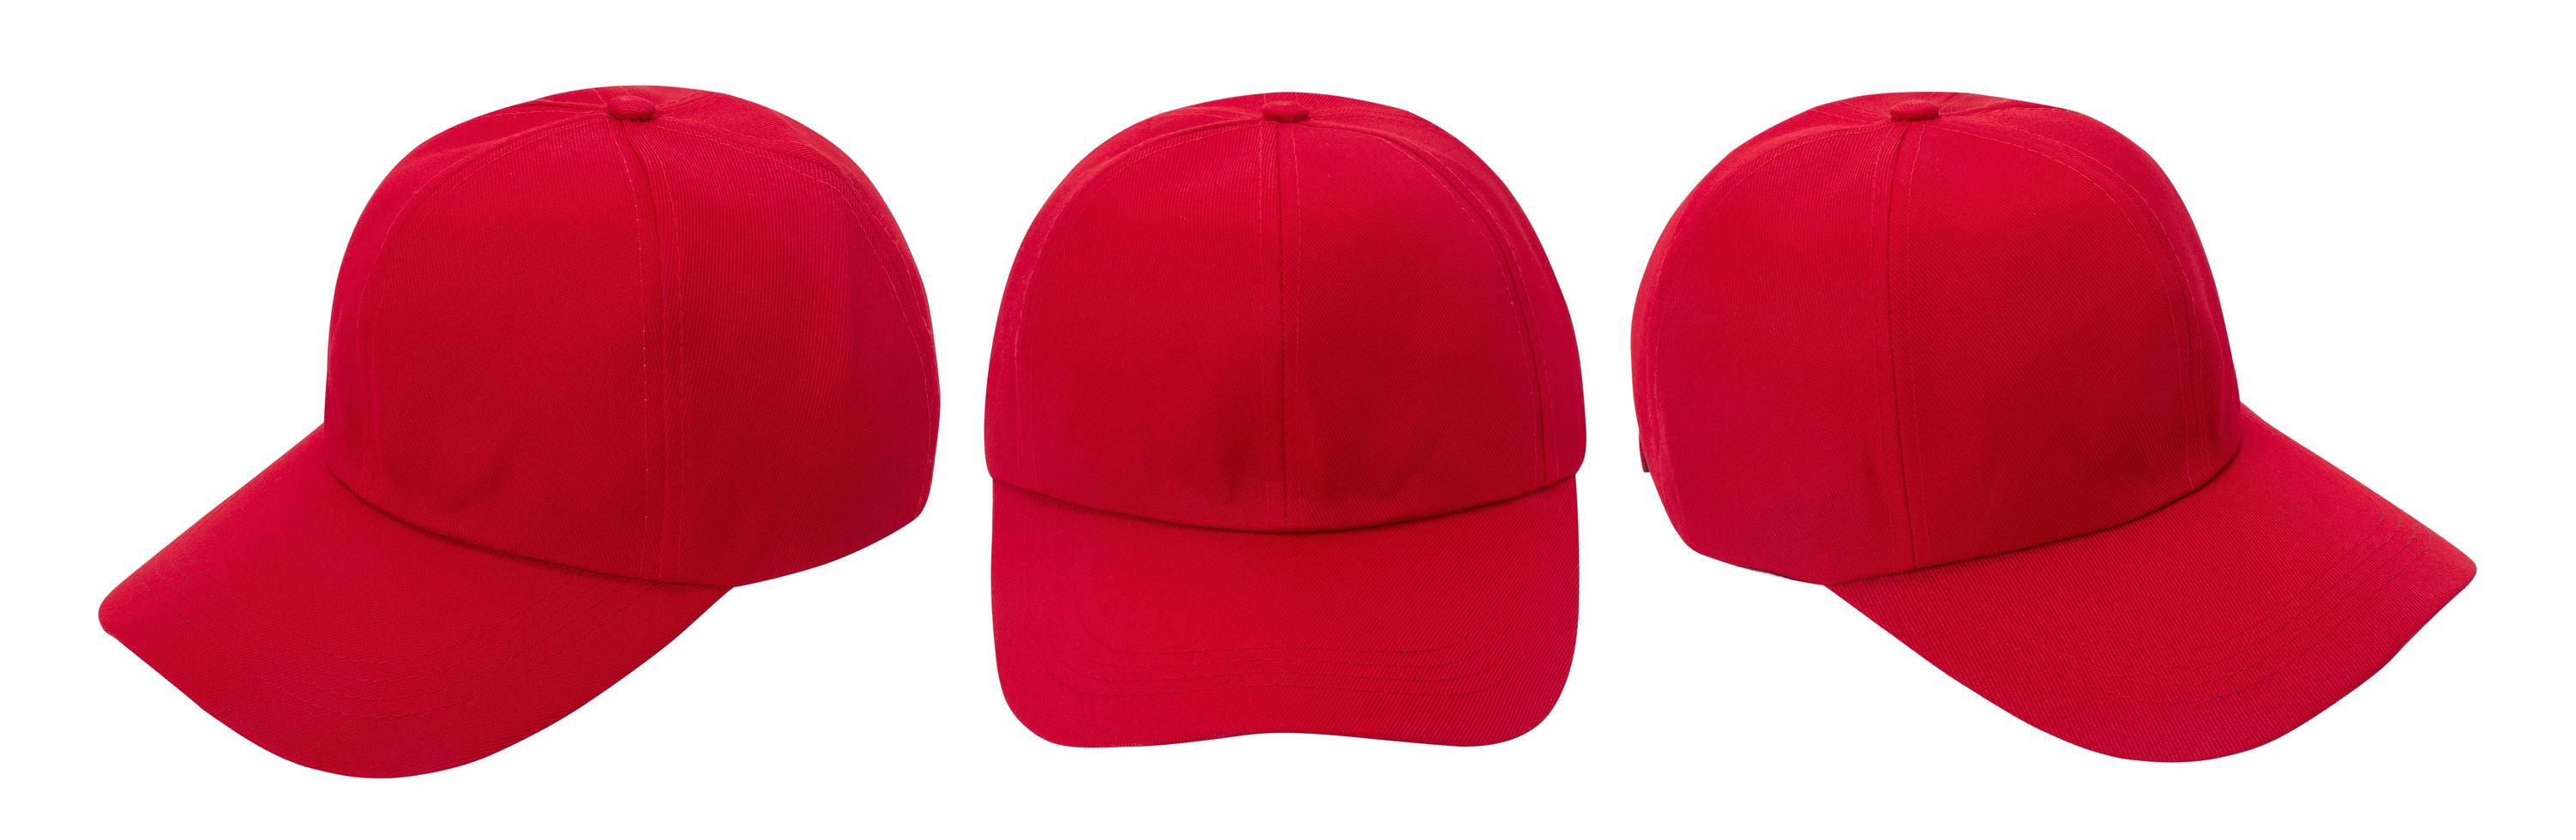 Red baseball cap mockup photo